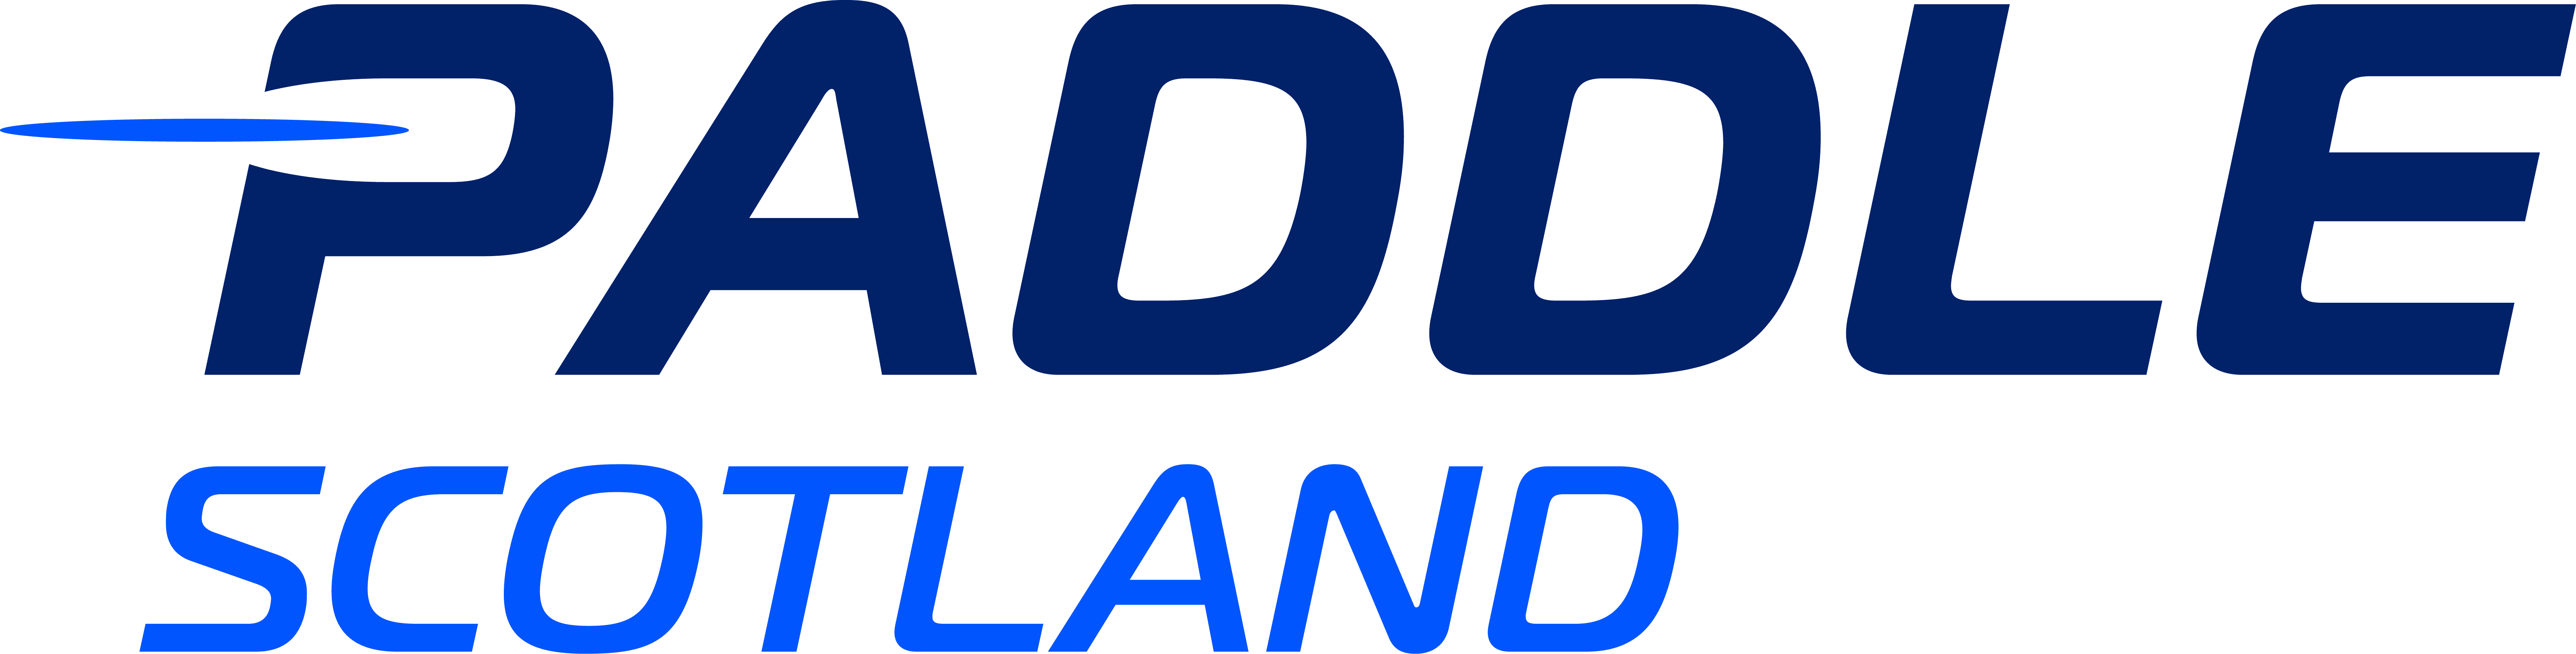 Paddle Scotland Logo